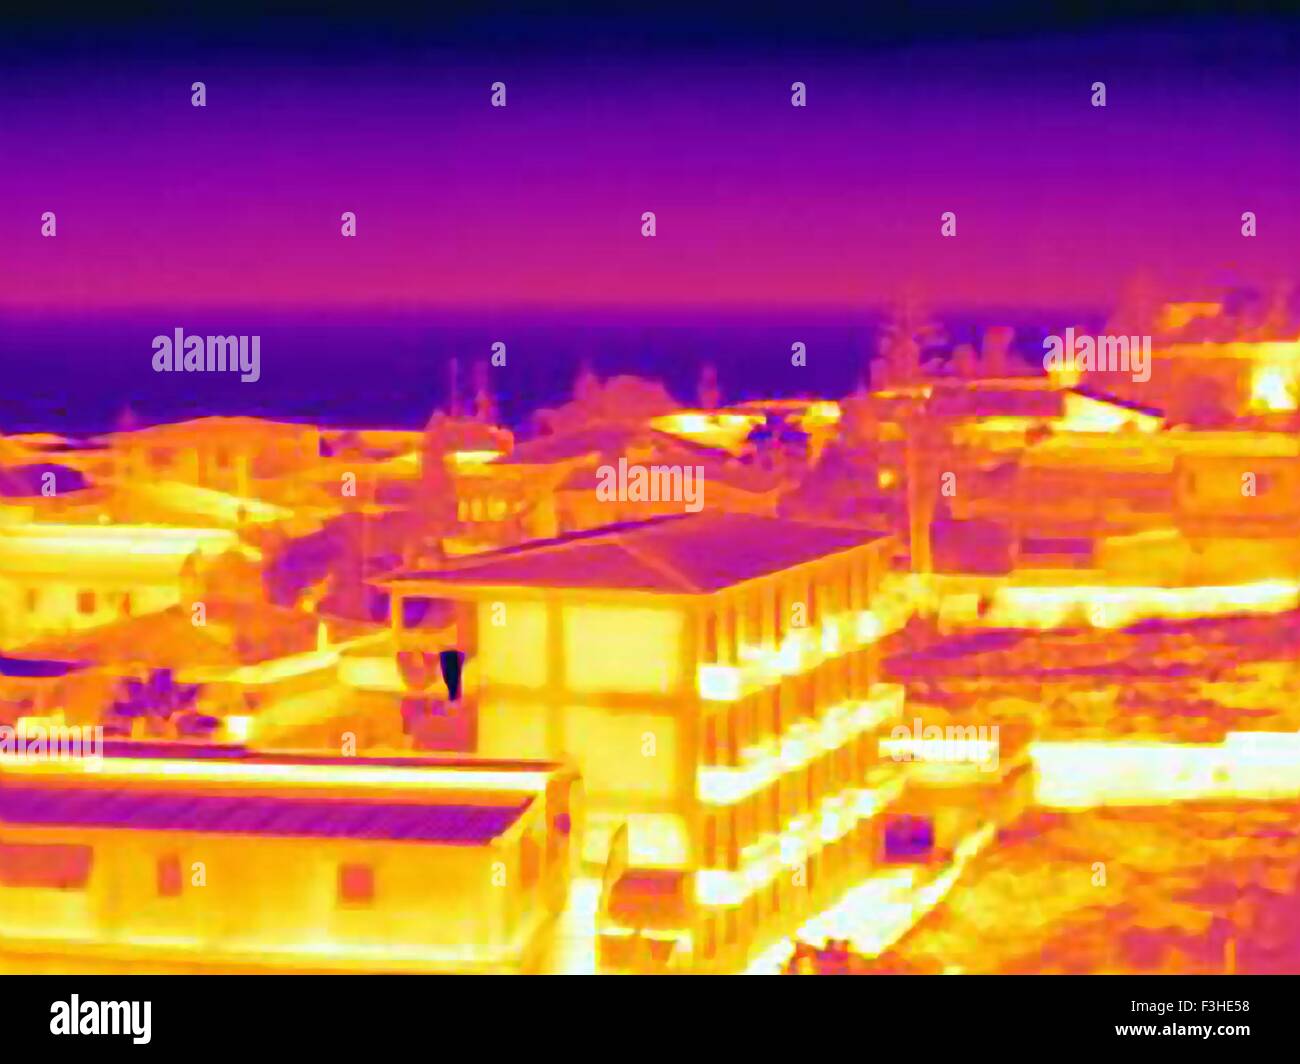 Immagine termica di case sulla spiaggia, Sicilia, Italia Foto Stock